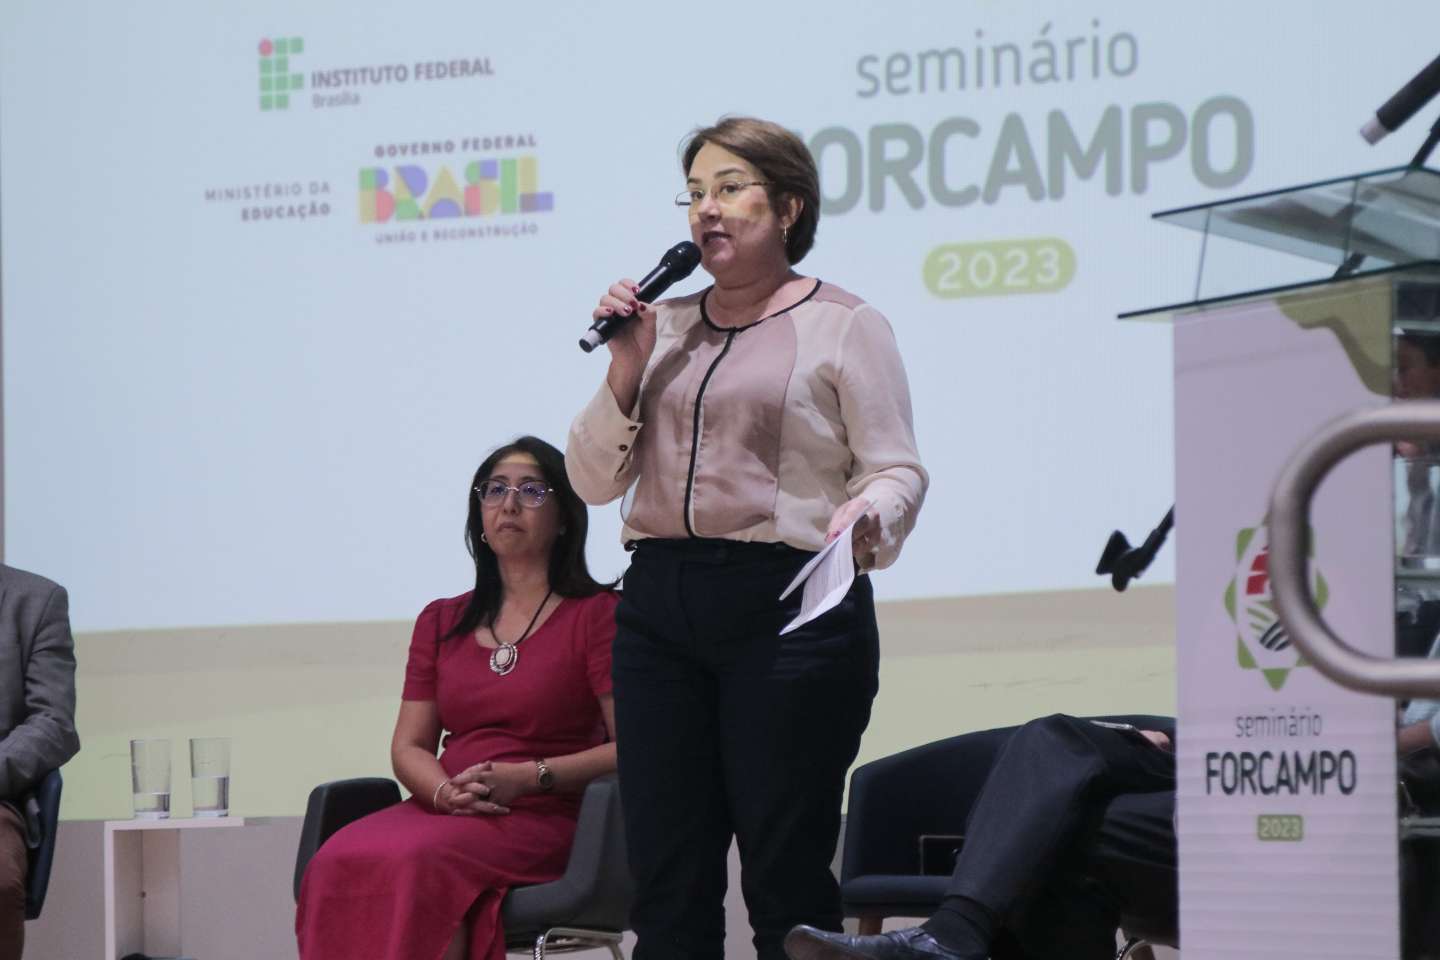 Seminário do Forcampo começa reforçando a força da Rede e suas necessidades na área agrícola